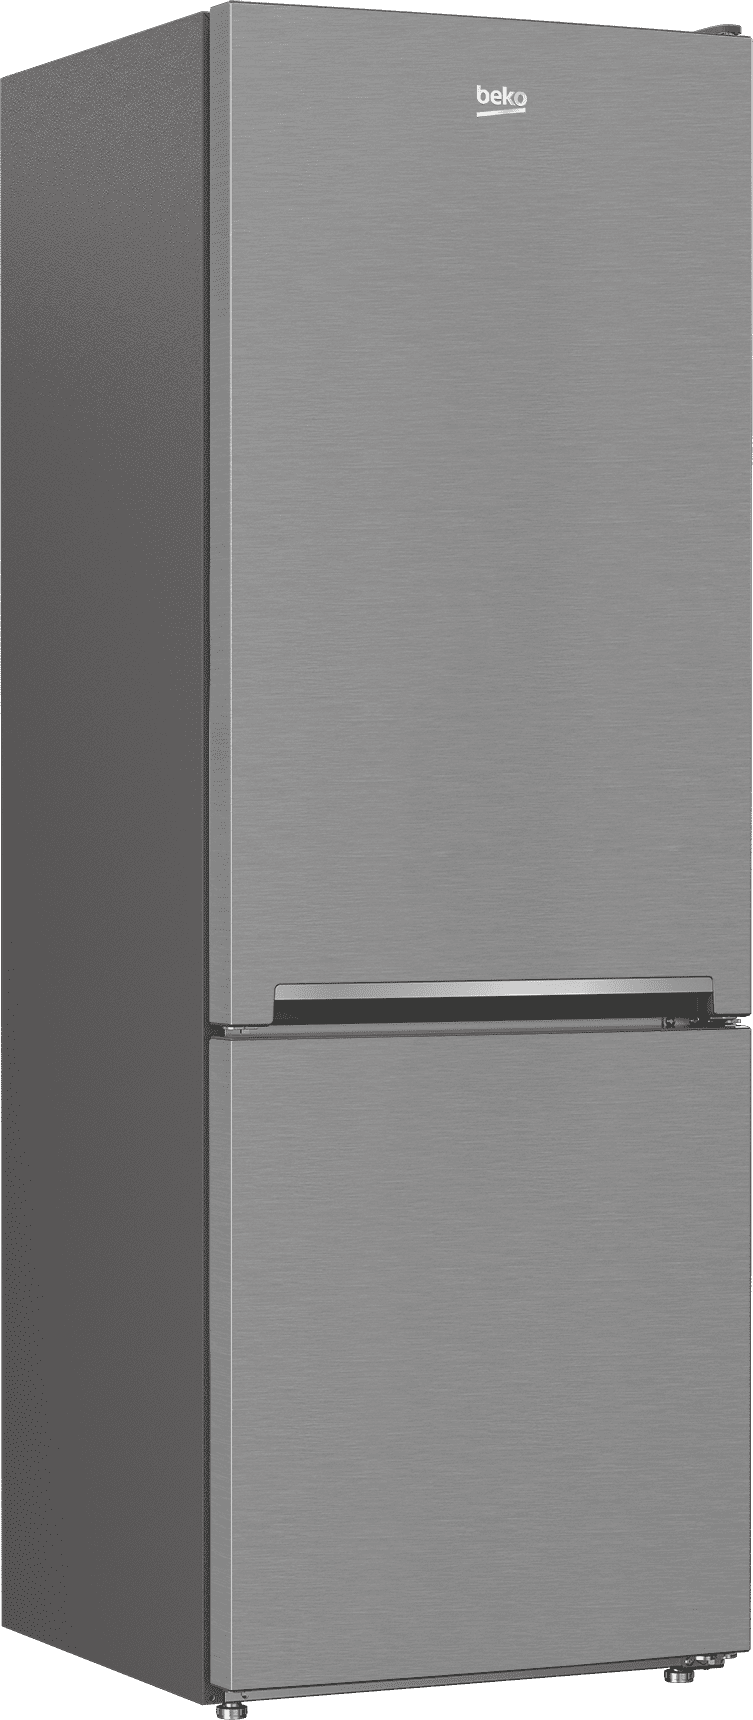 Beko BFBF2414SS 24" Counter-Depth Bottom Freezer Refrigerator